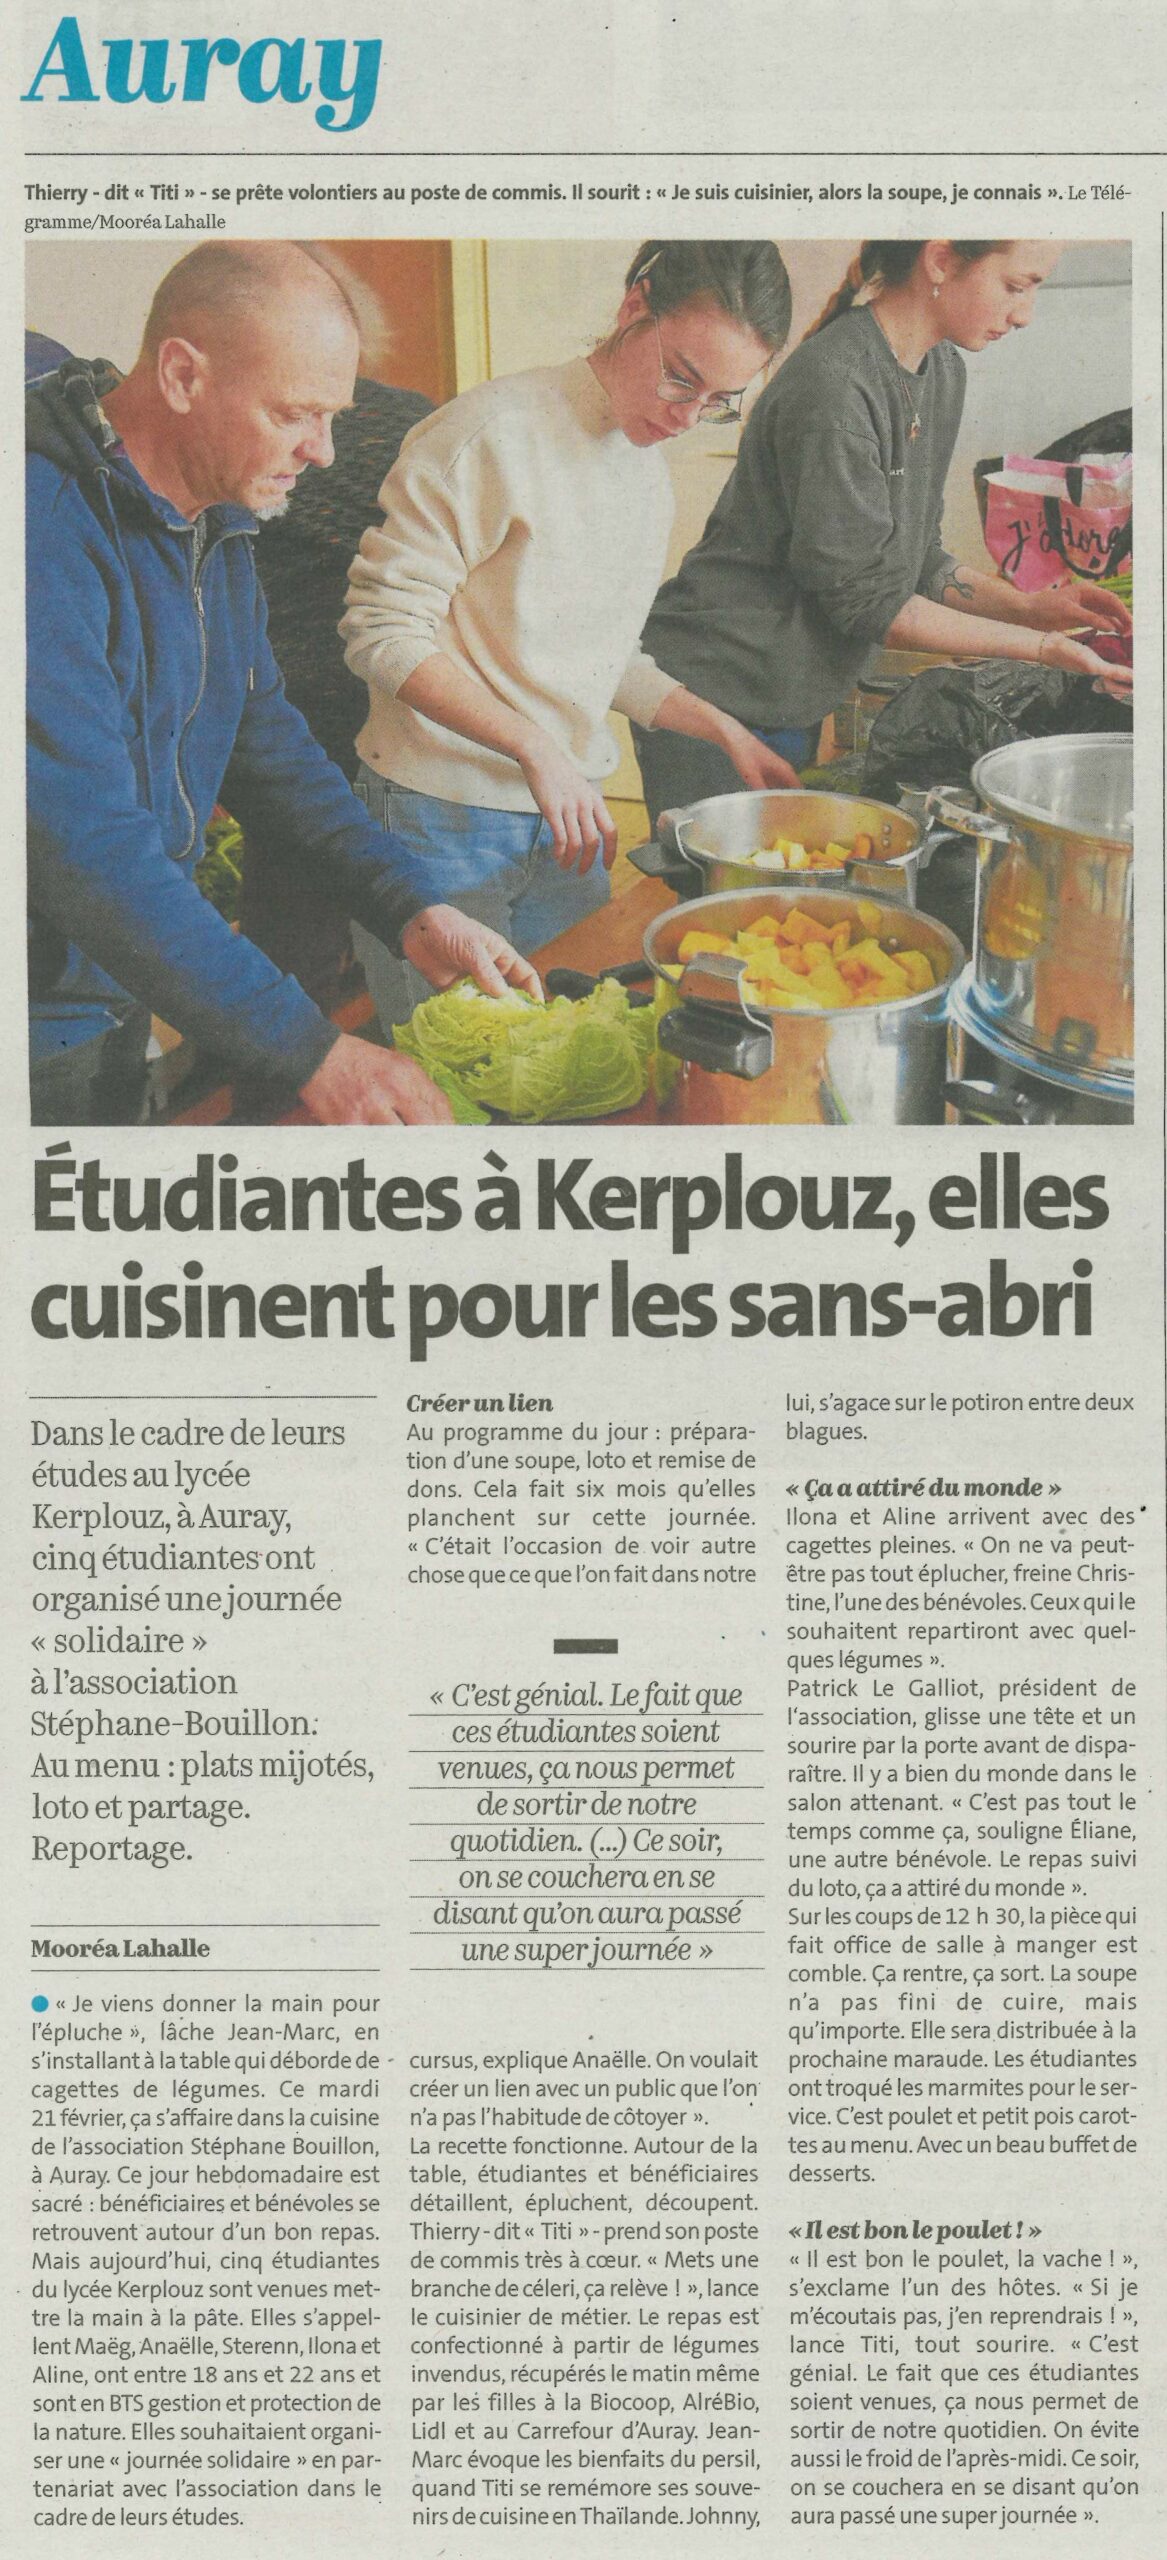 Etudiantes à Kerplouz, elles cuisinent pour les sans-abri